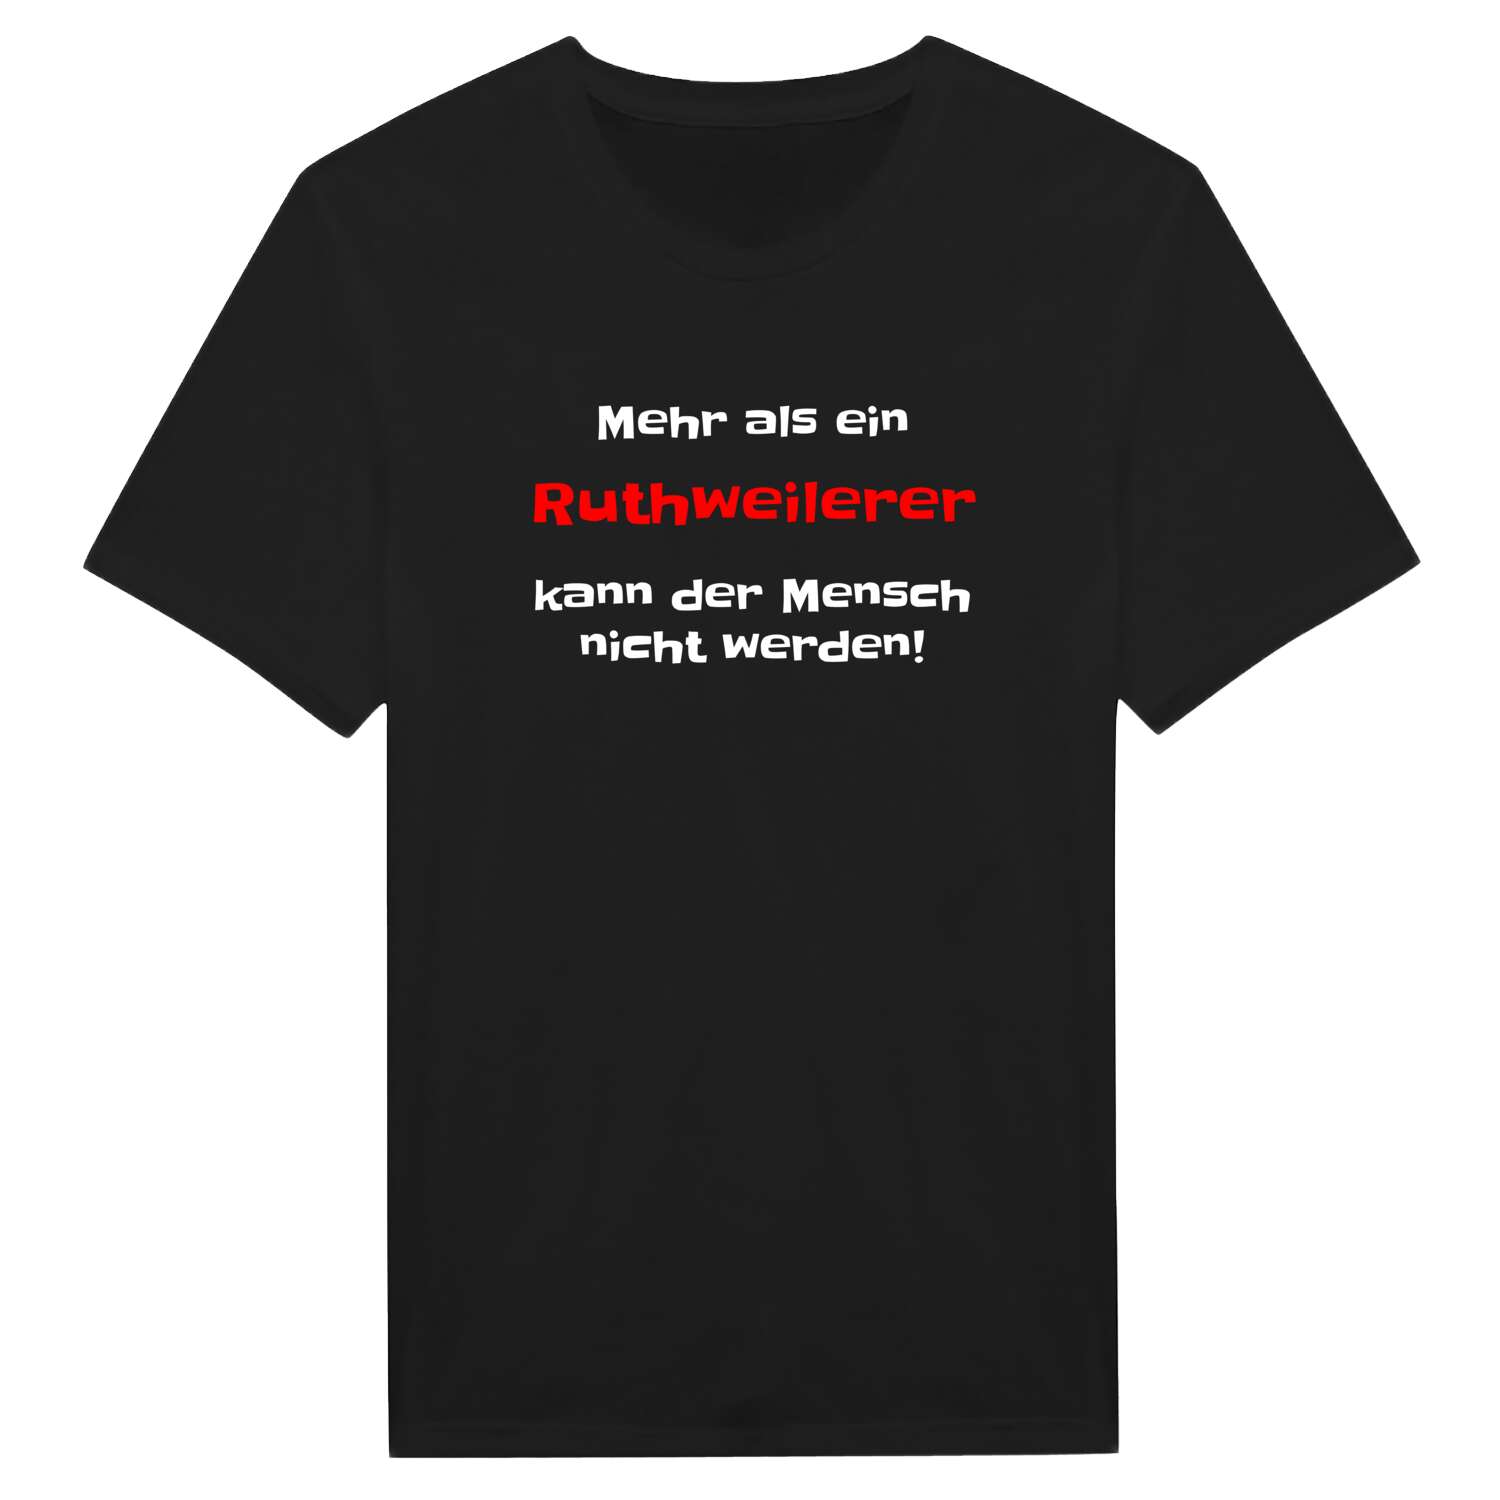 Ruthweiler T-Shirt »Mehr als ein«